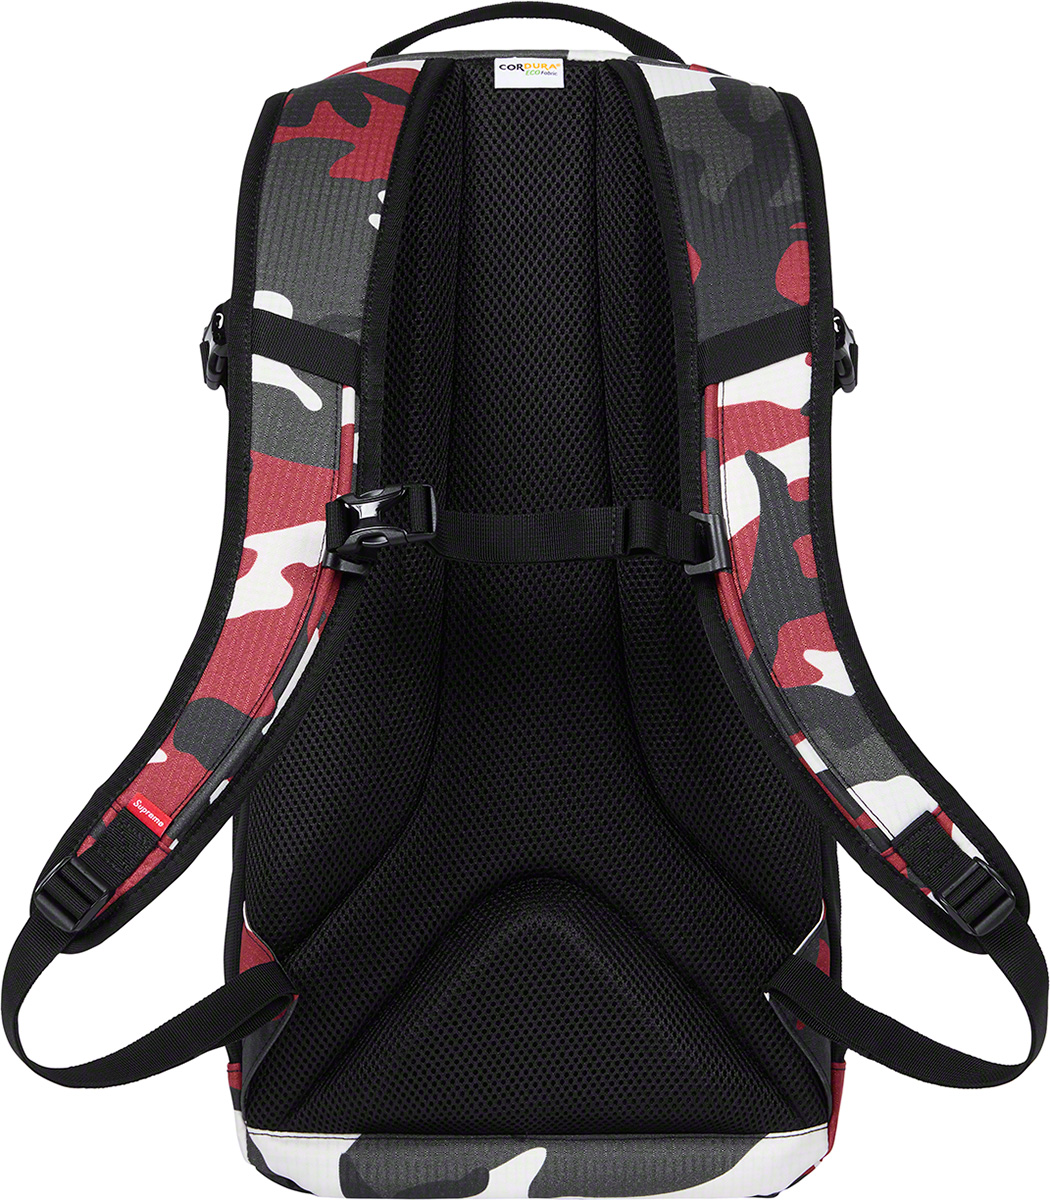 supreme backpack 2021 supring summer